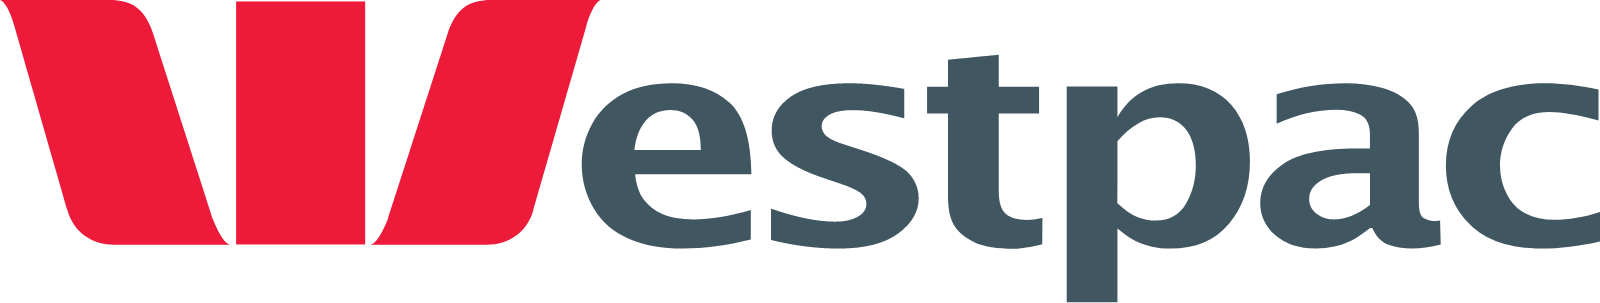 Westpac Banking logo large (transparent PNG)